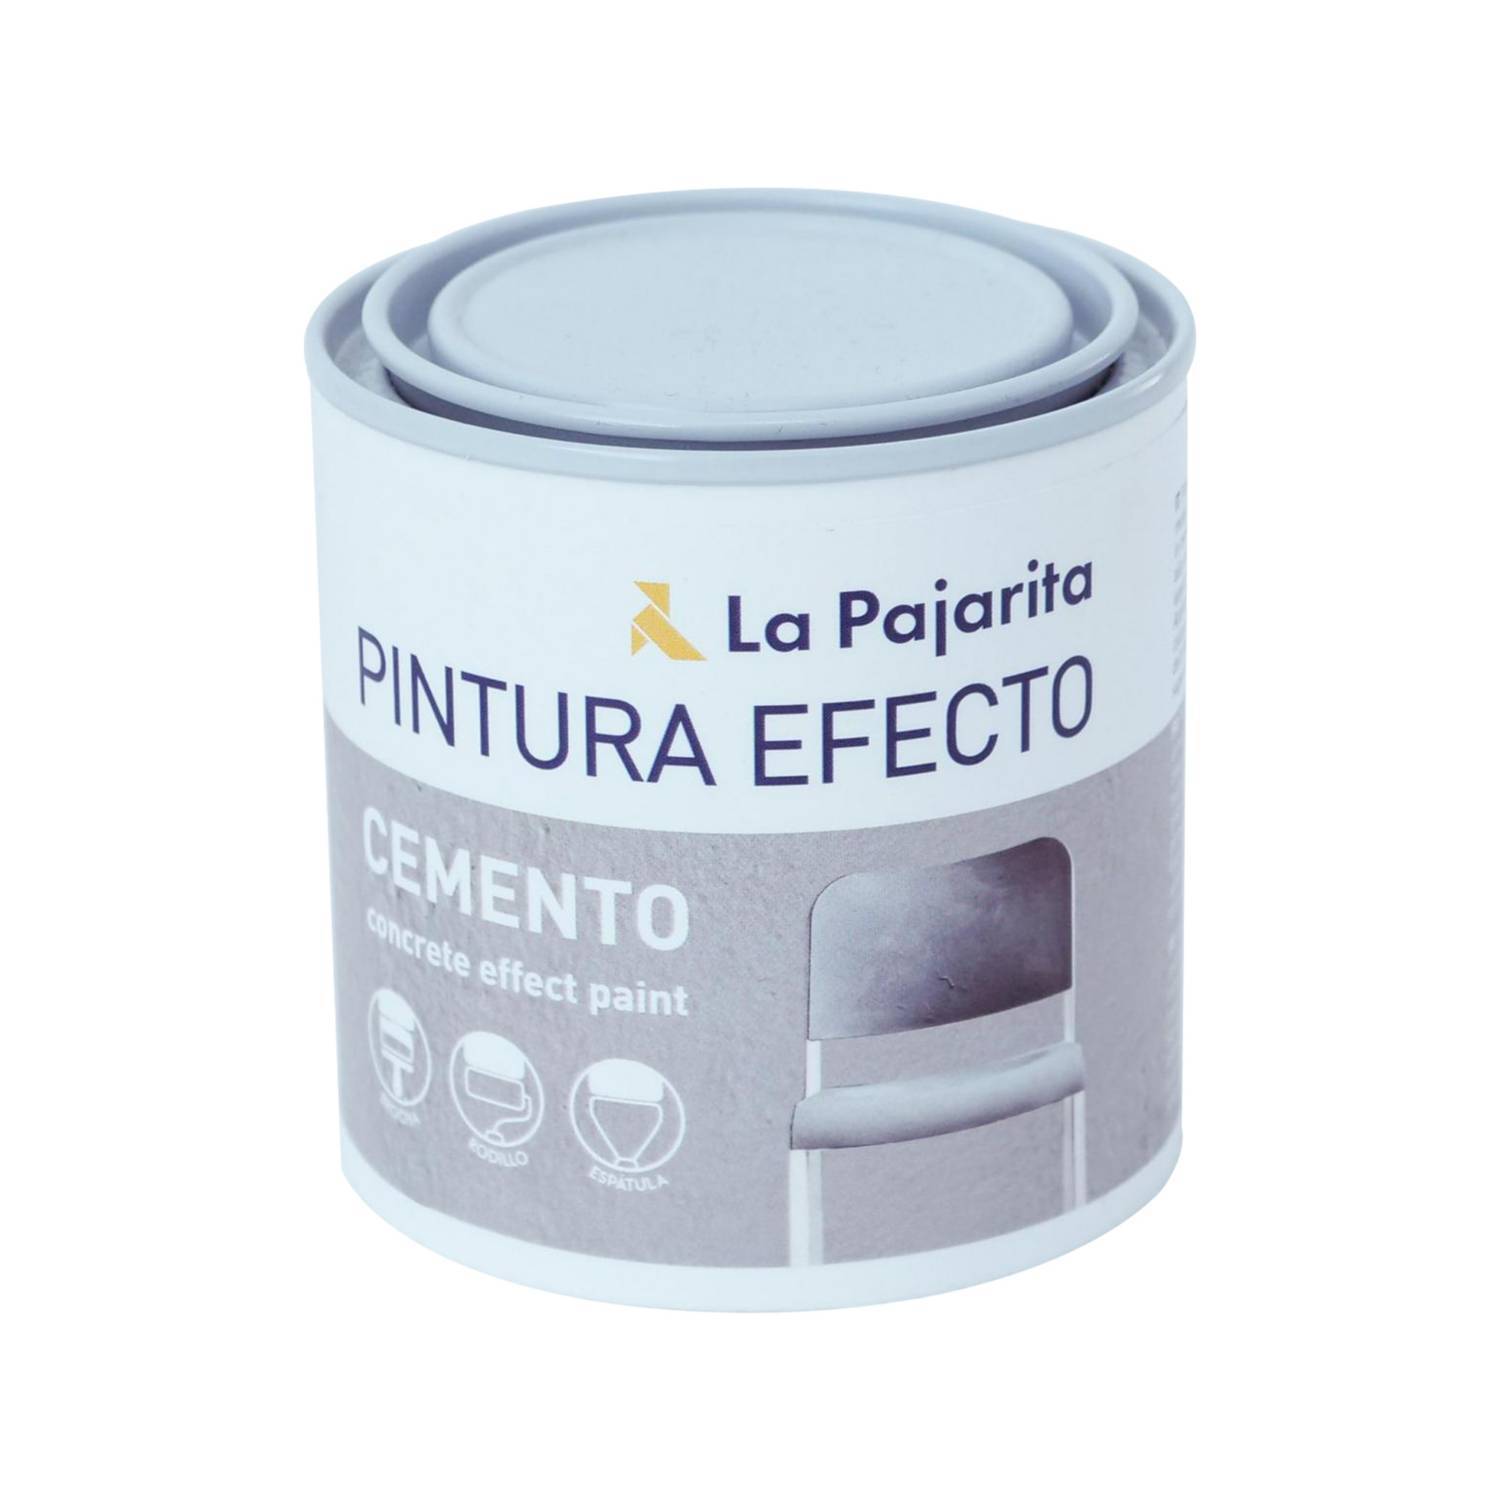 LA PAJARITA Pintura Efecto Cemento 250 ml